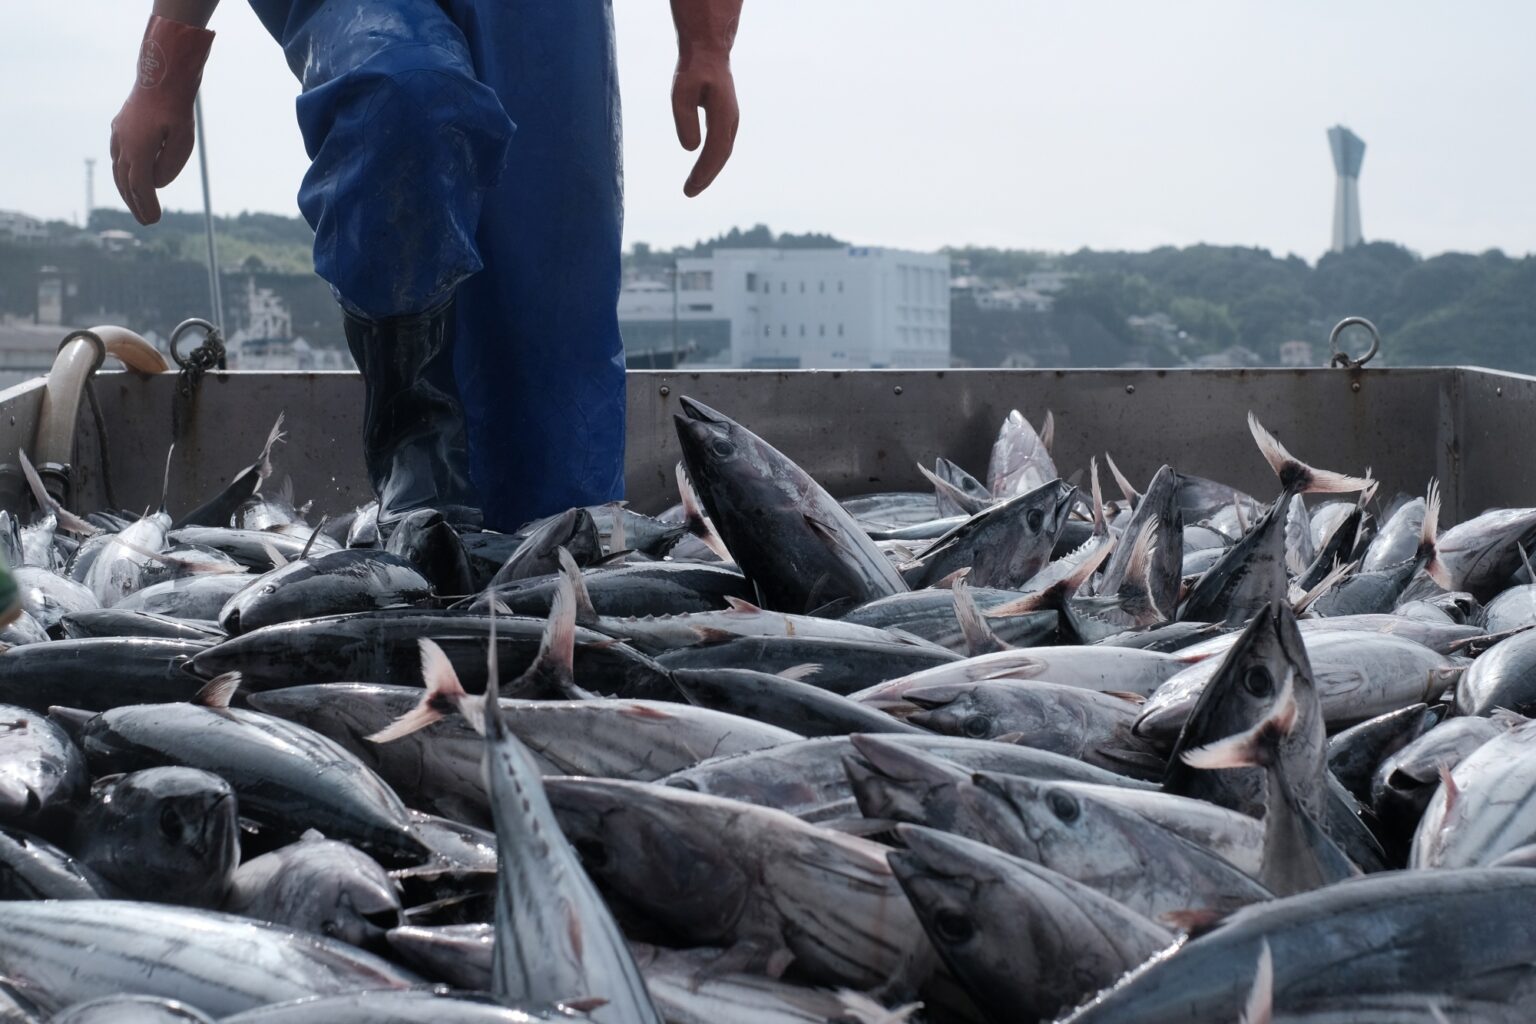 Seafood-Crisis-Looms-in-Hong-Kong-The-Fukushima-Ripple-Effect